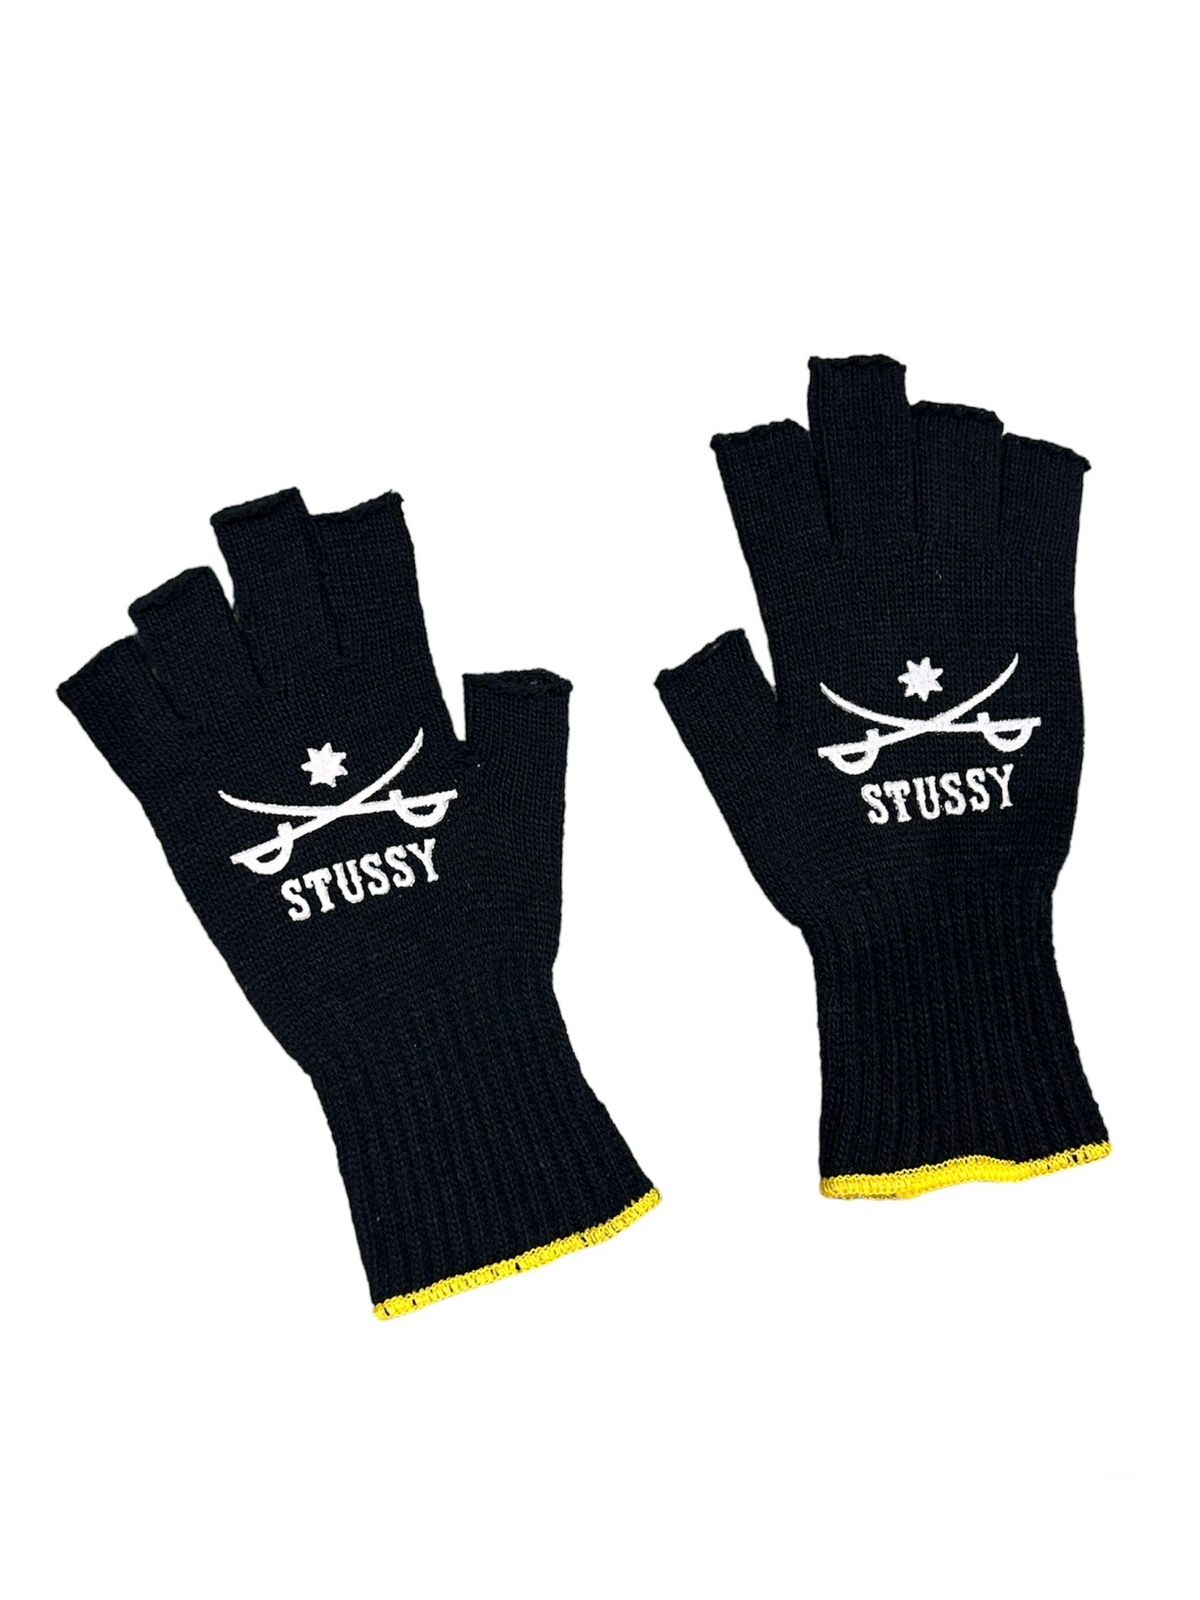 Stussy Sword Fingerless Gloves Black Yellow (Japan Only) - 1